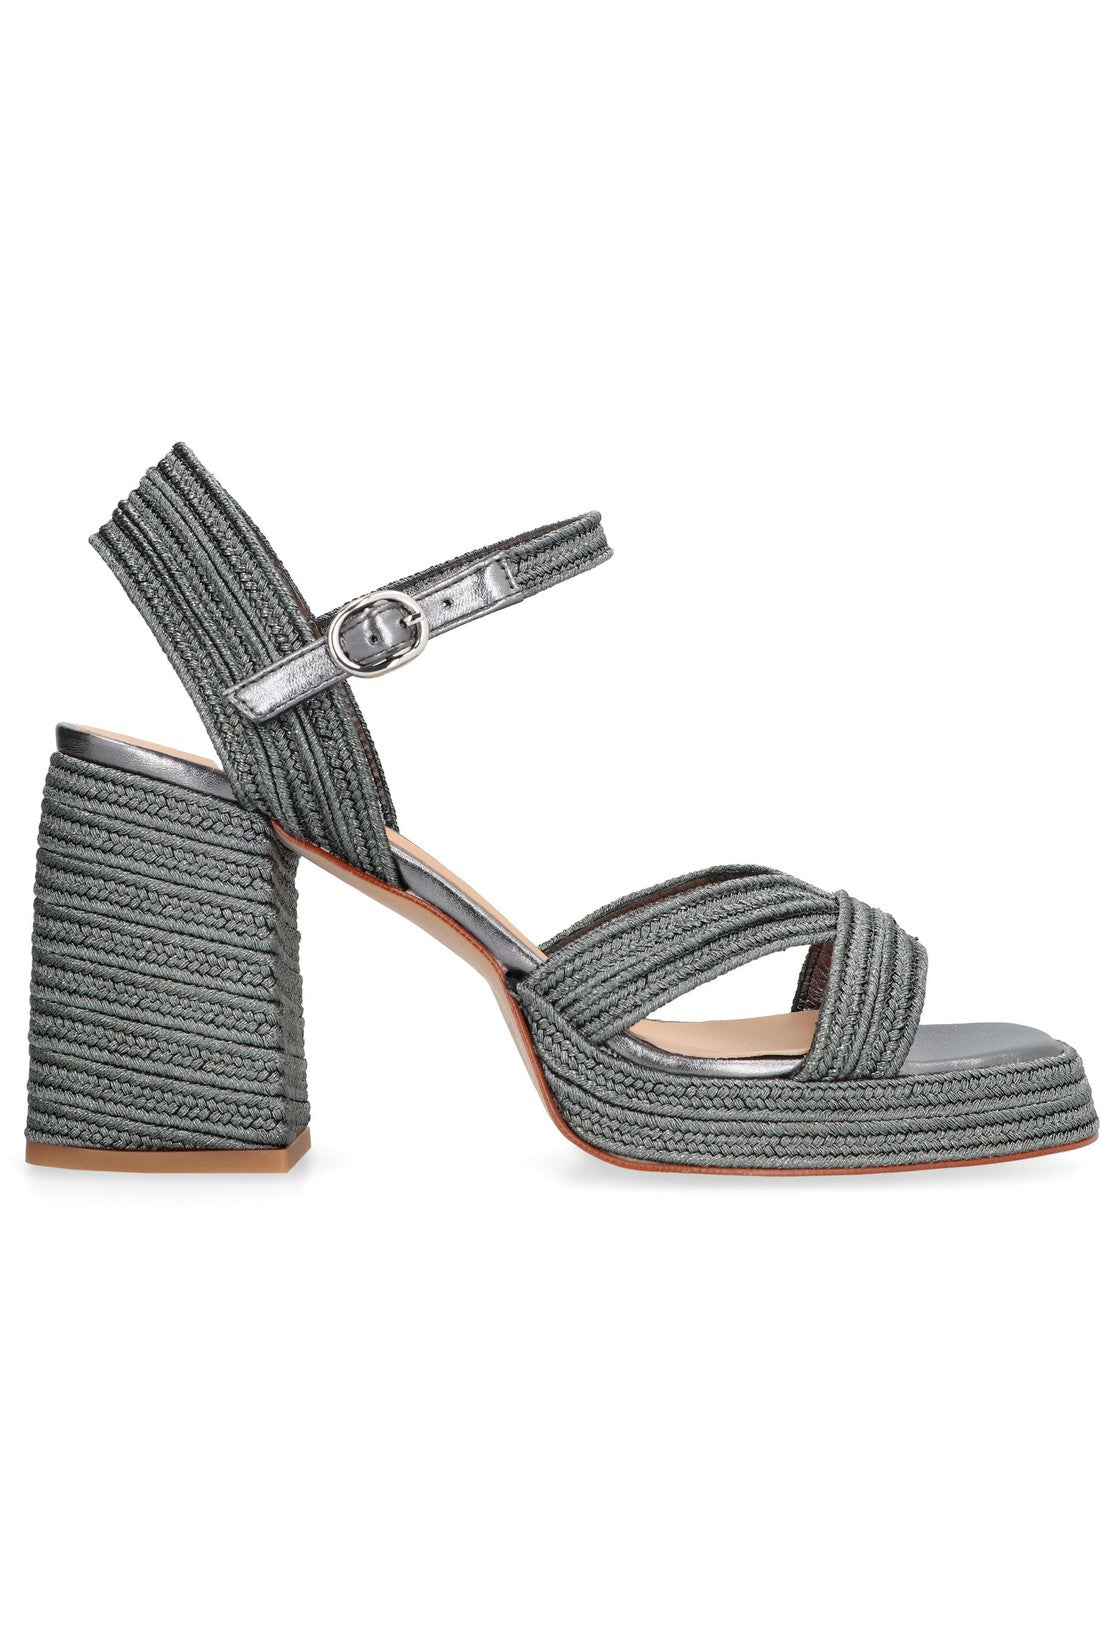 Castaner-OUTLET-SALE-Valle heeled sandals-ARCHIVIST